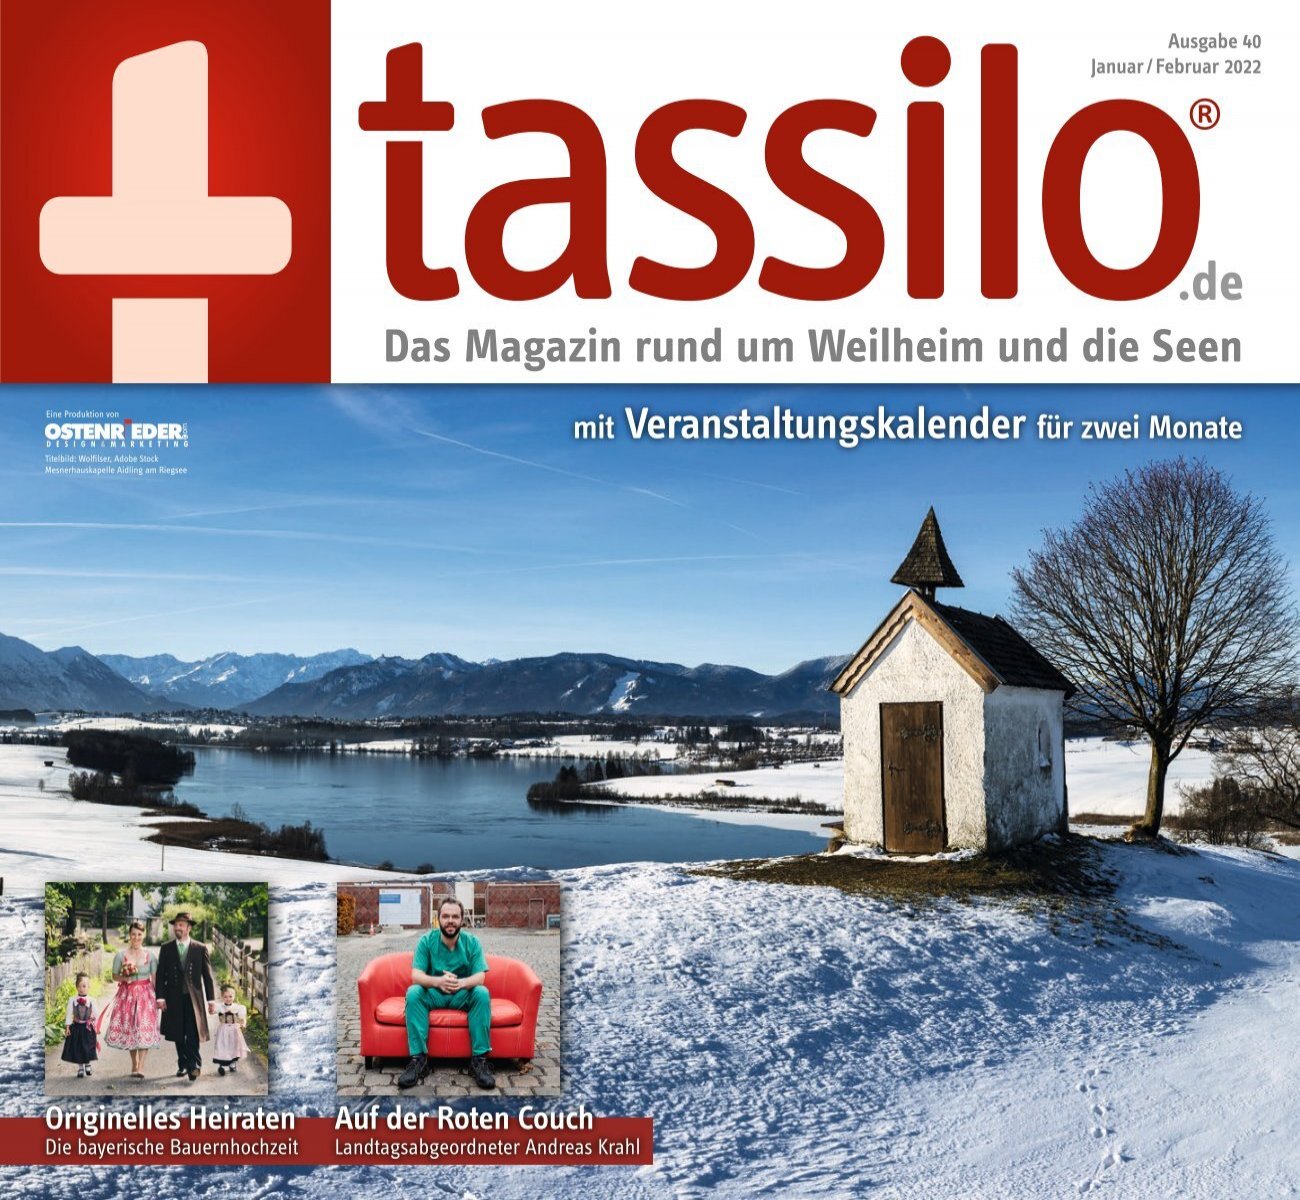 tassilo - das Magazin rund um Weilheim und die Seen - Ausgabe